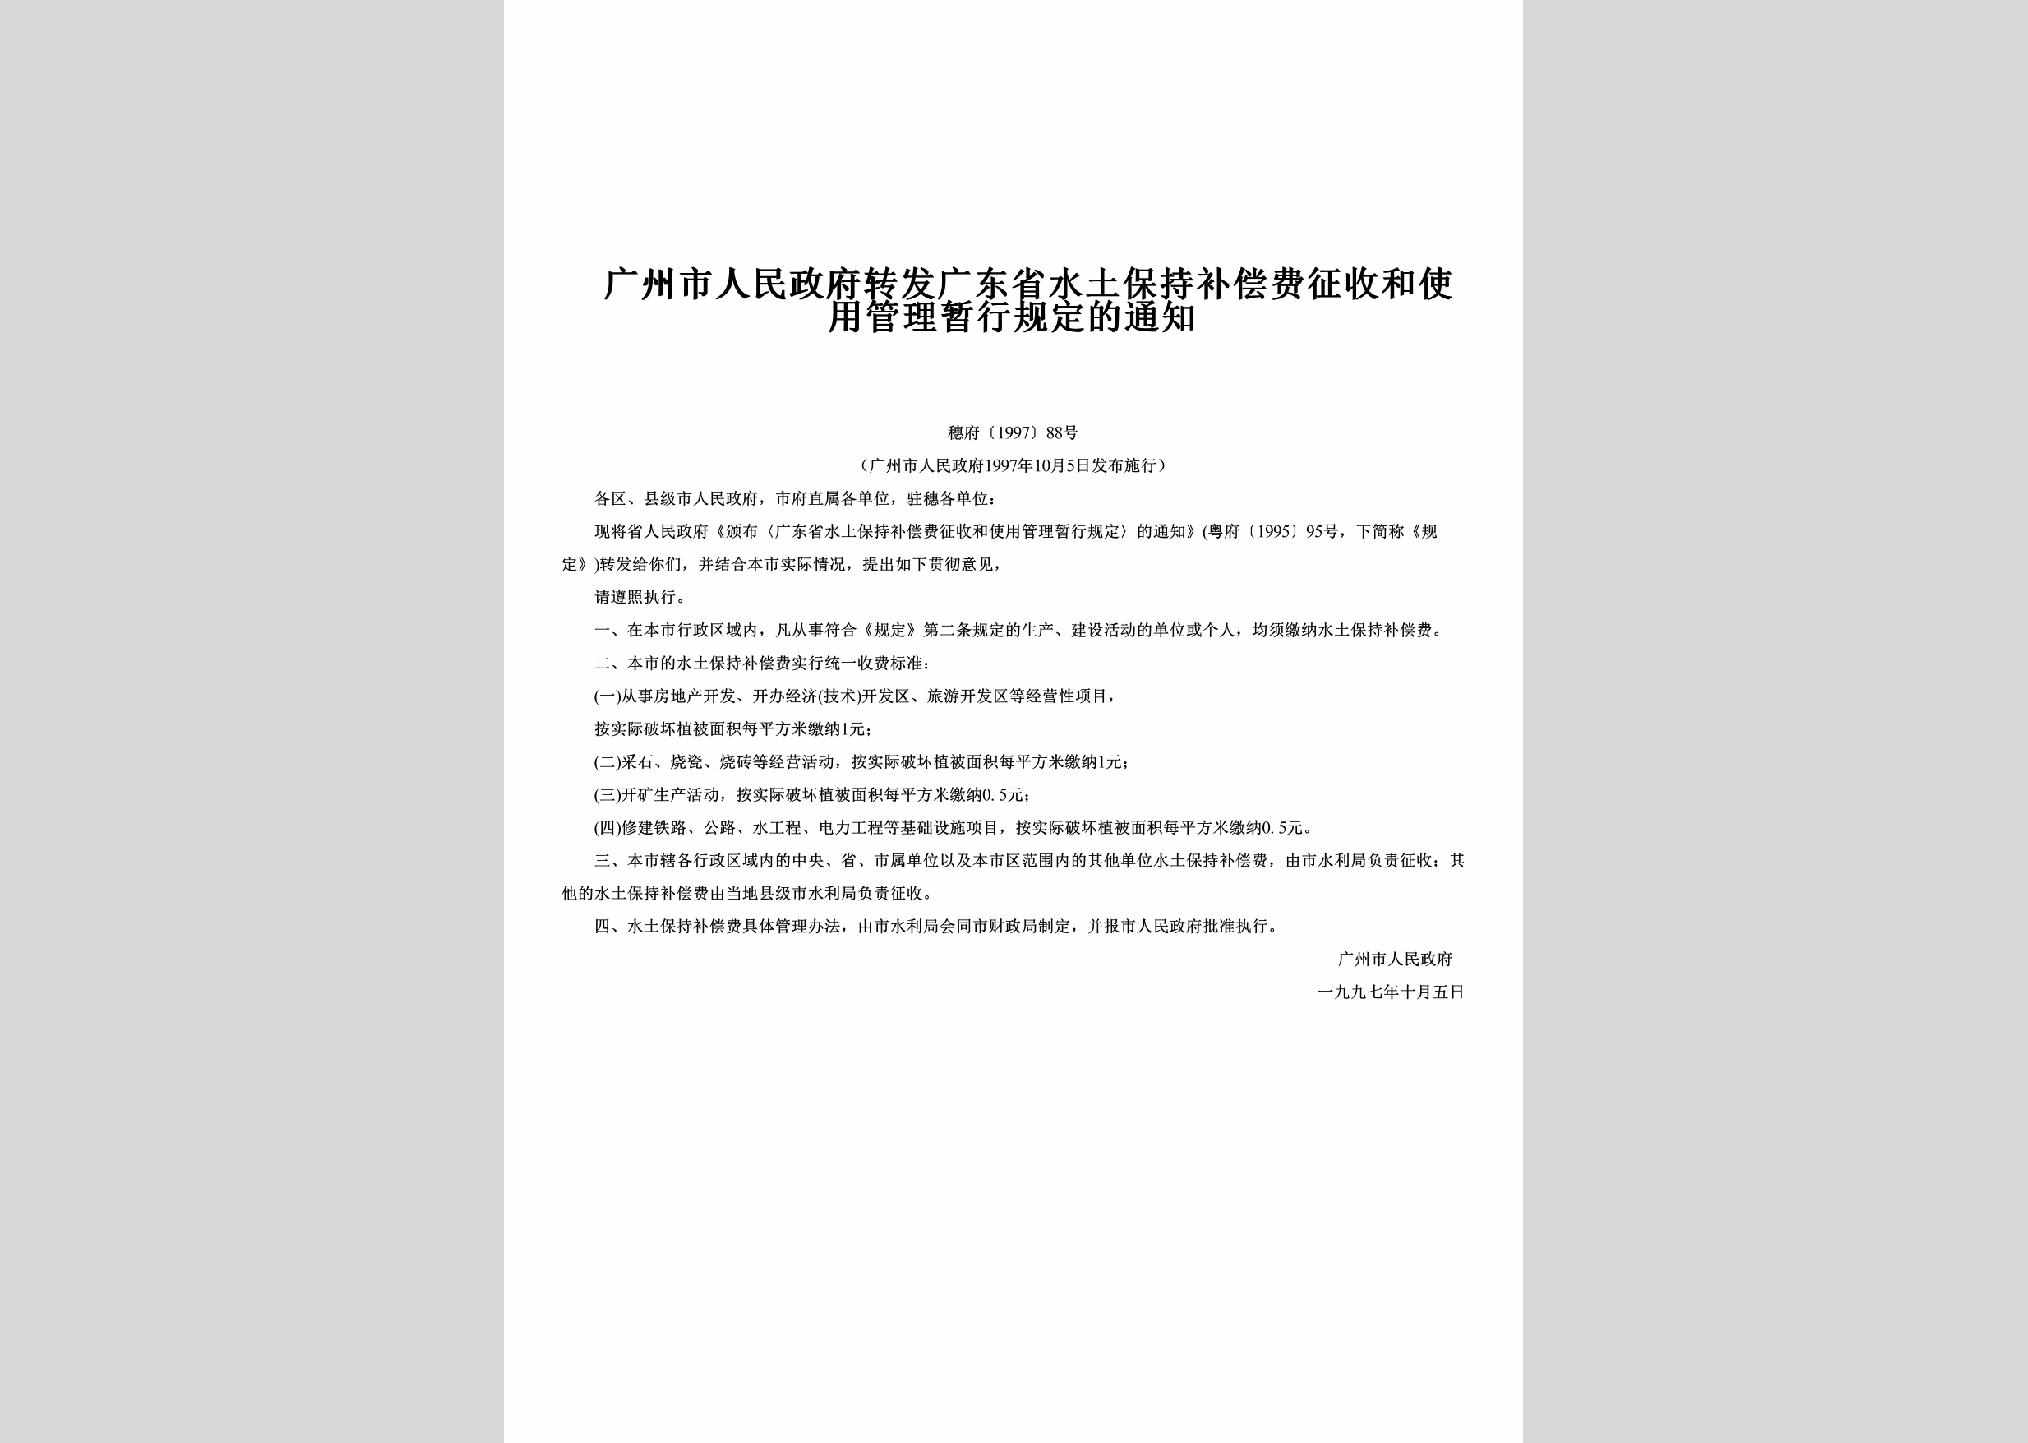 穗府[1997]88号：转发广东省水土保持补偿费征收和使用管理暂行规定的通知